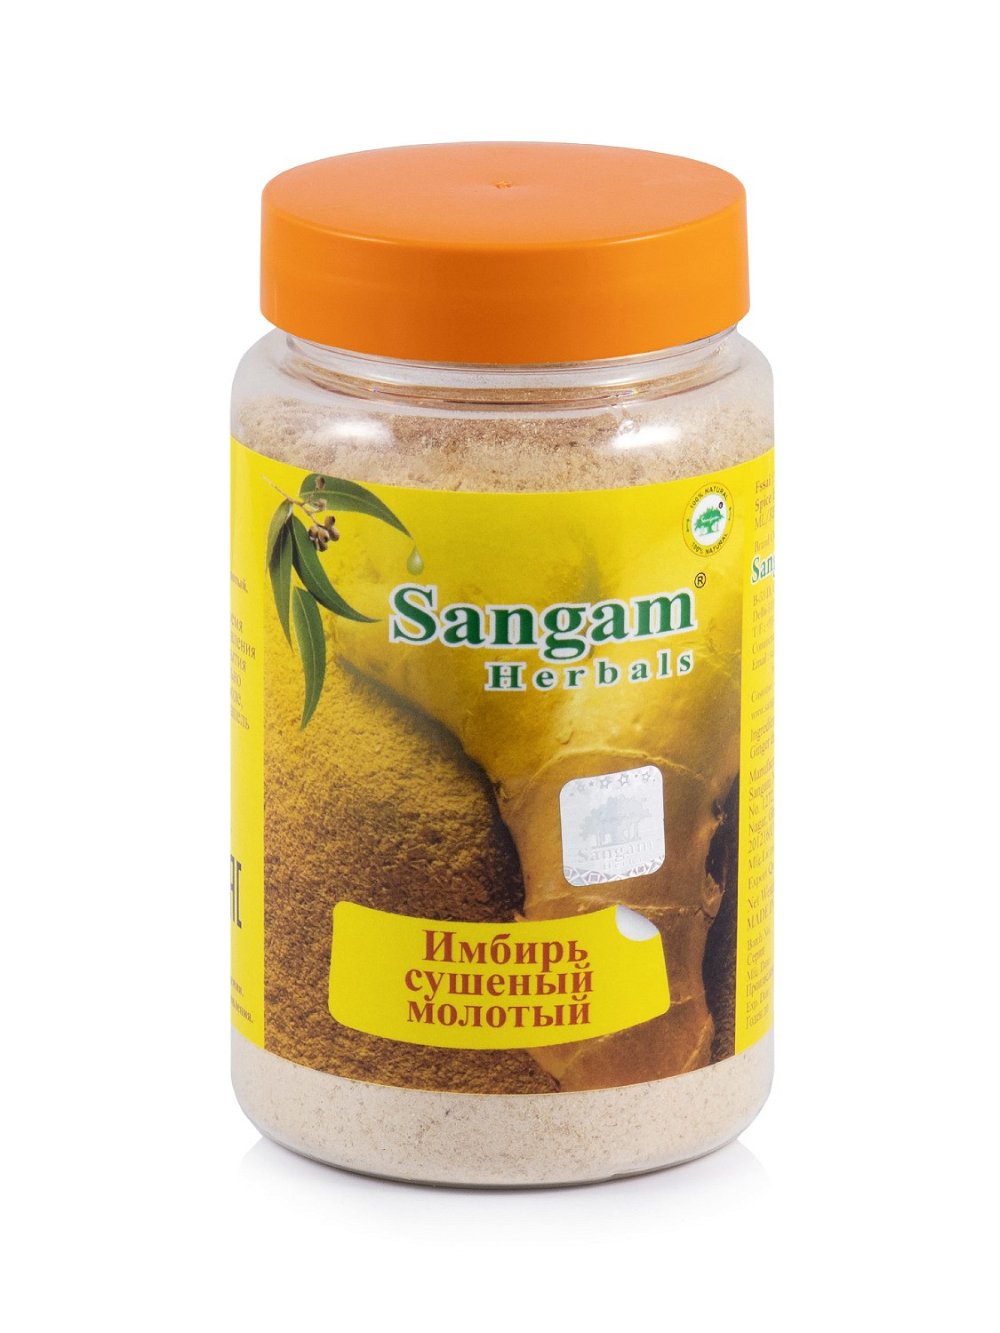 Имбирь сушеный молотый Sangam Herbals (100 г), Имбирь сушеный молотый